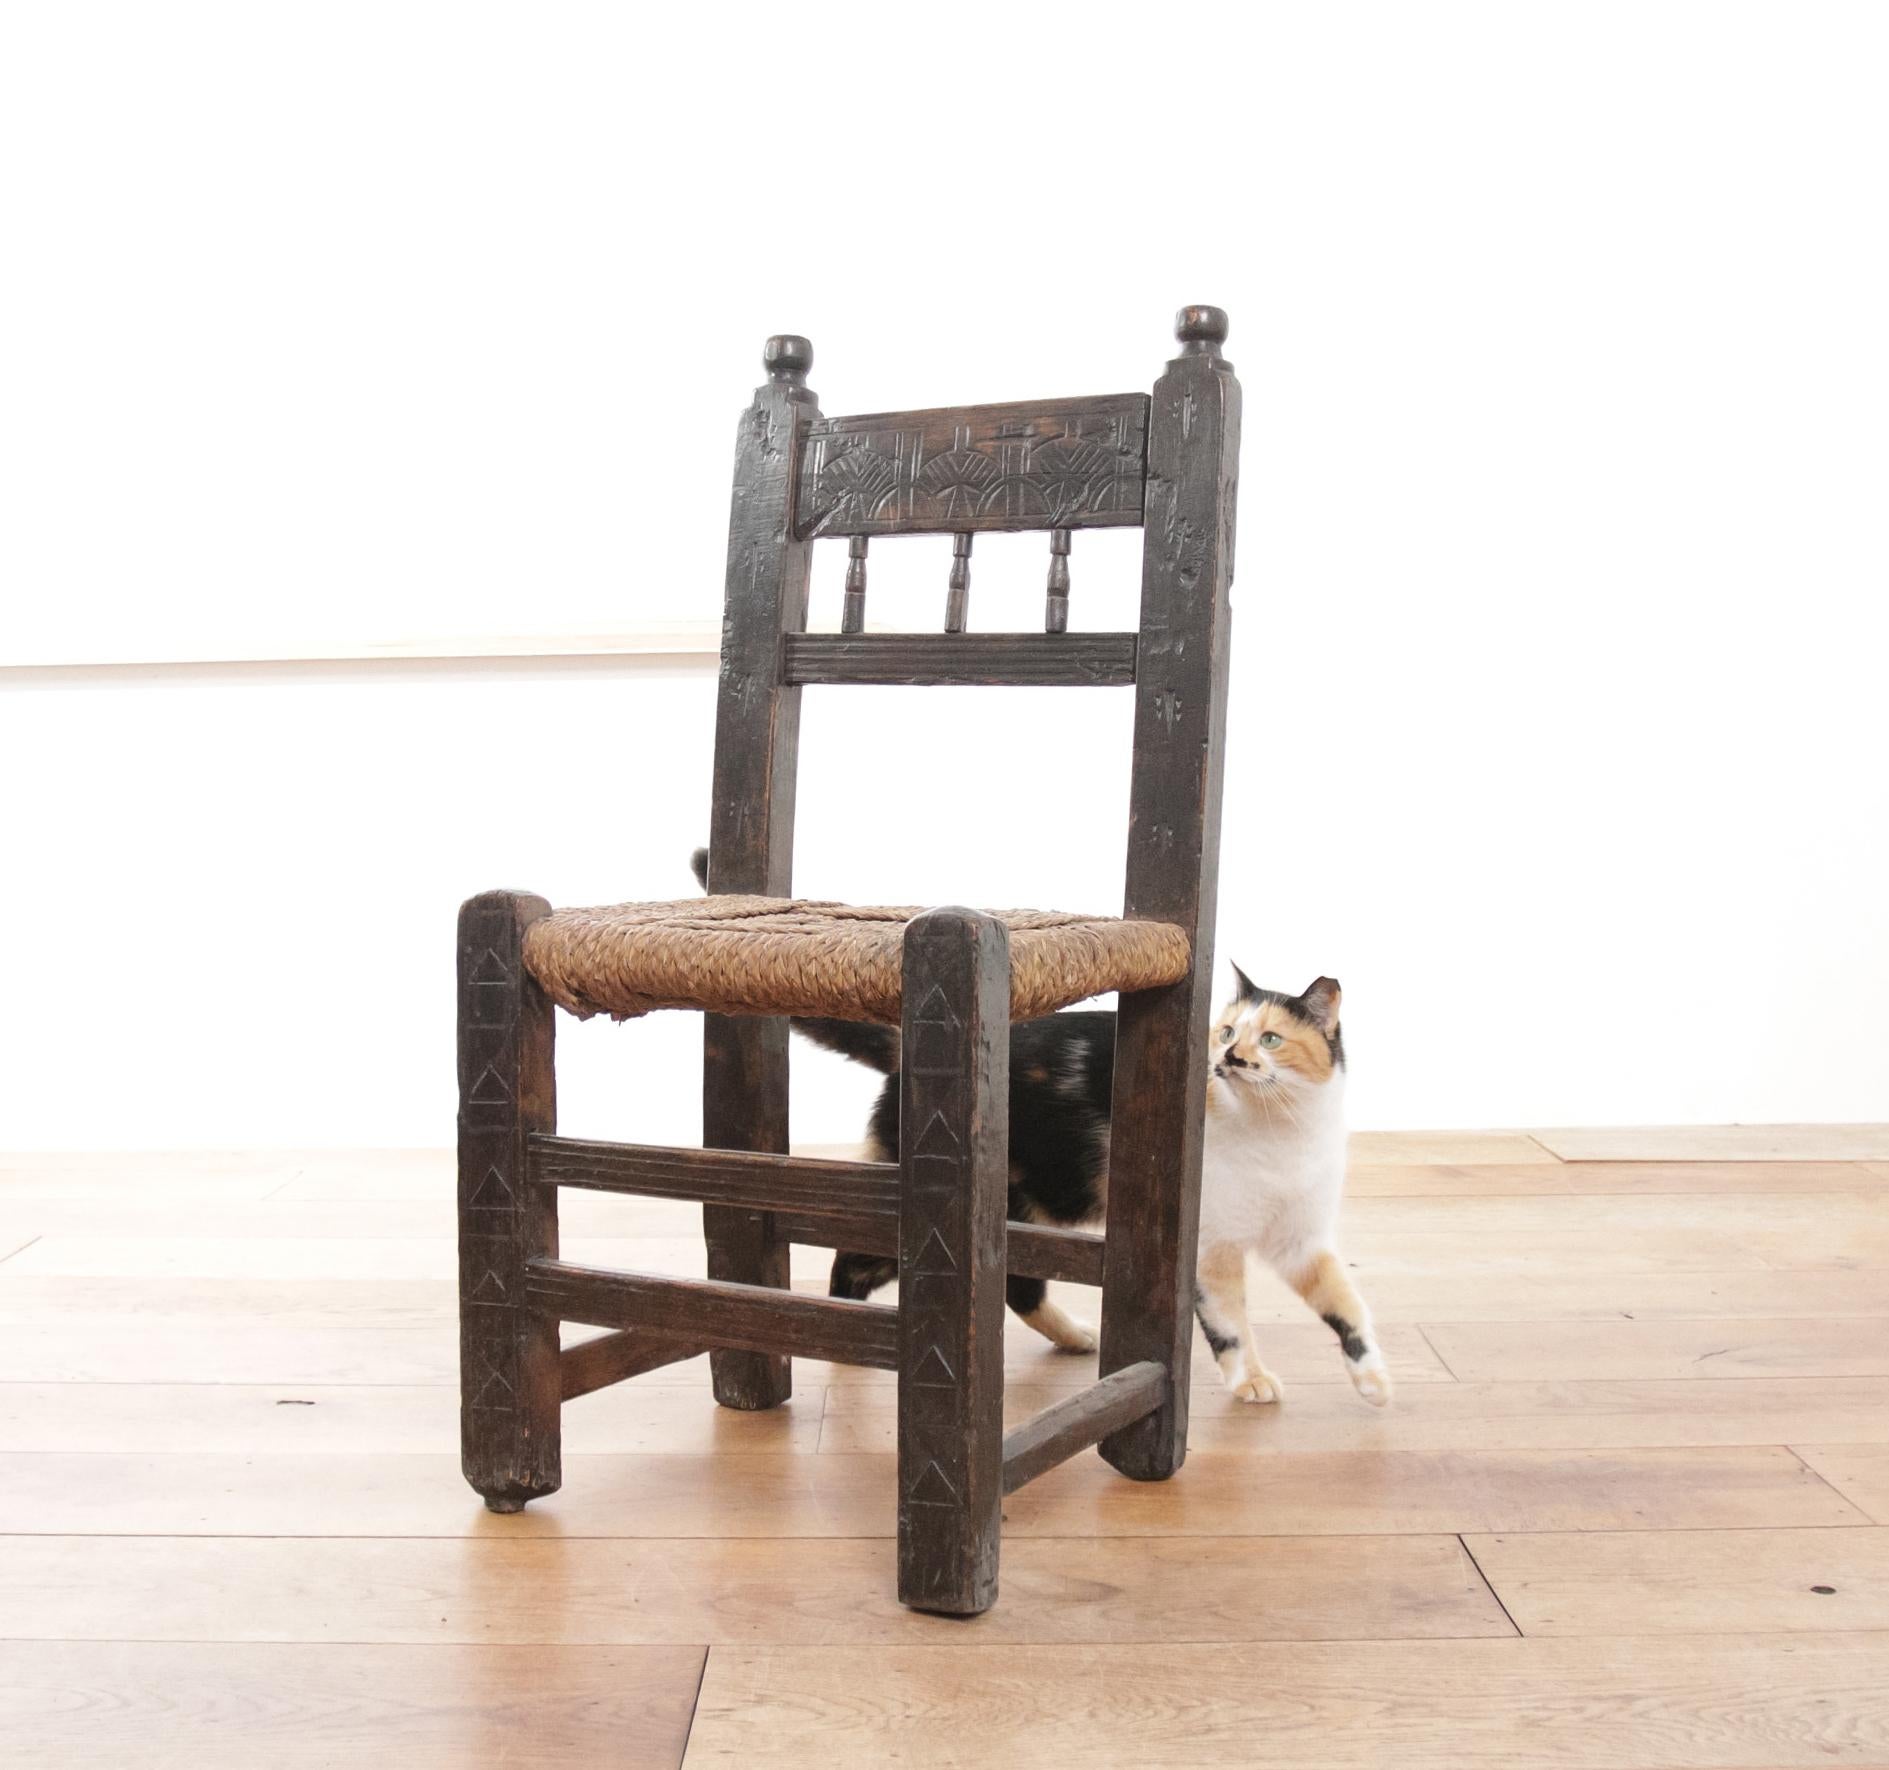 Holen Sie sich ein Stück ländliche Eleganz mit diesem originalen Bauernstuhl aus dem 17. Jahrhundert, der mit handgeschnitzten Motiven verziert ist, die eine minimalistische Einrichtung oder einen Wabi-Sabi-Stil perfekt ergänzen. Dieser Stuhl, der